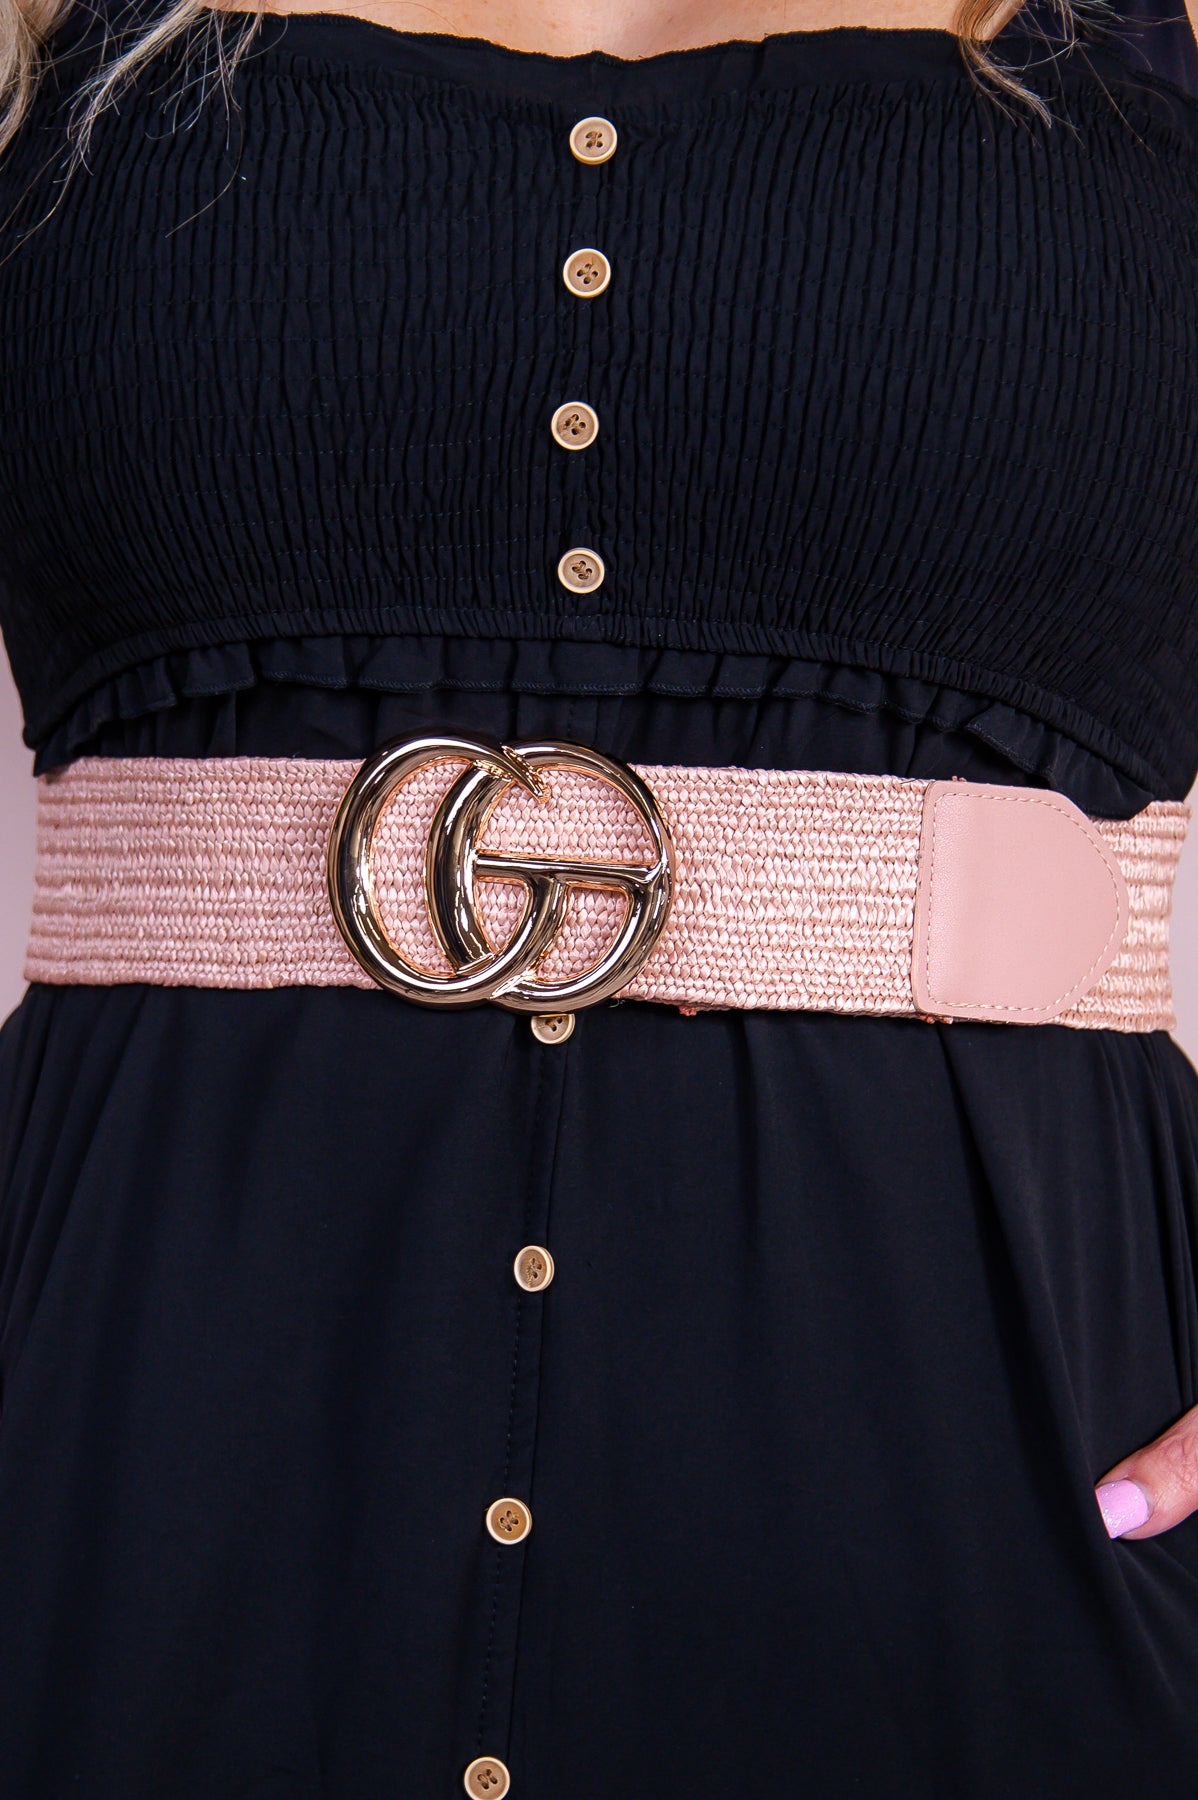 Pink/Gold Woven Regular Belt - BLT1293PK